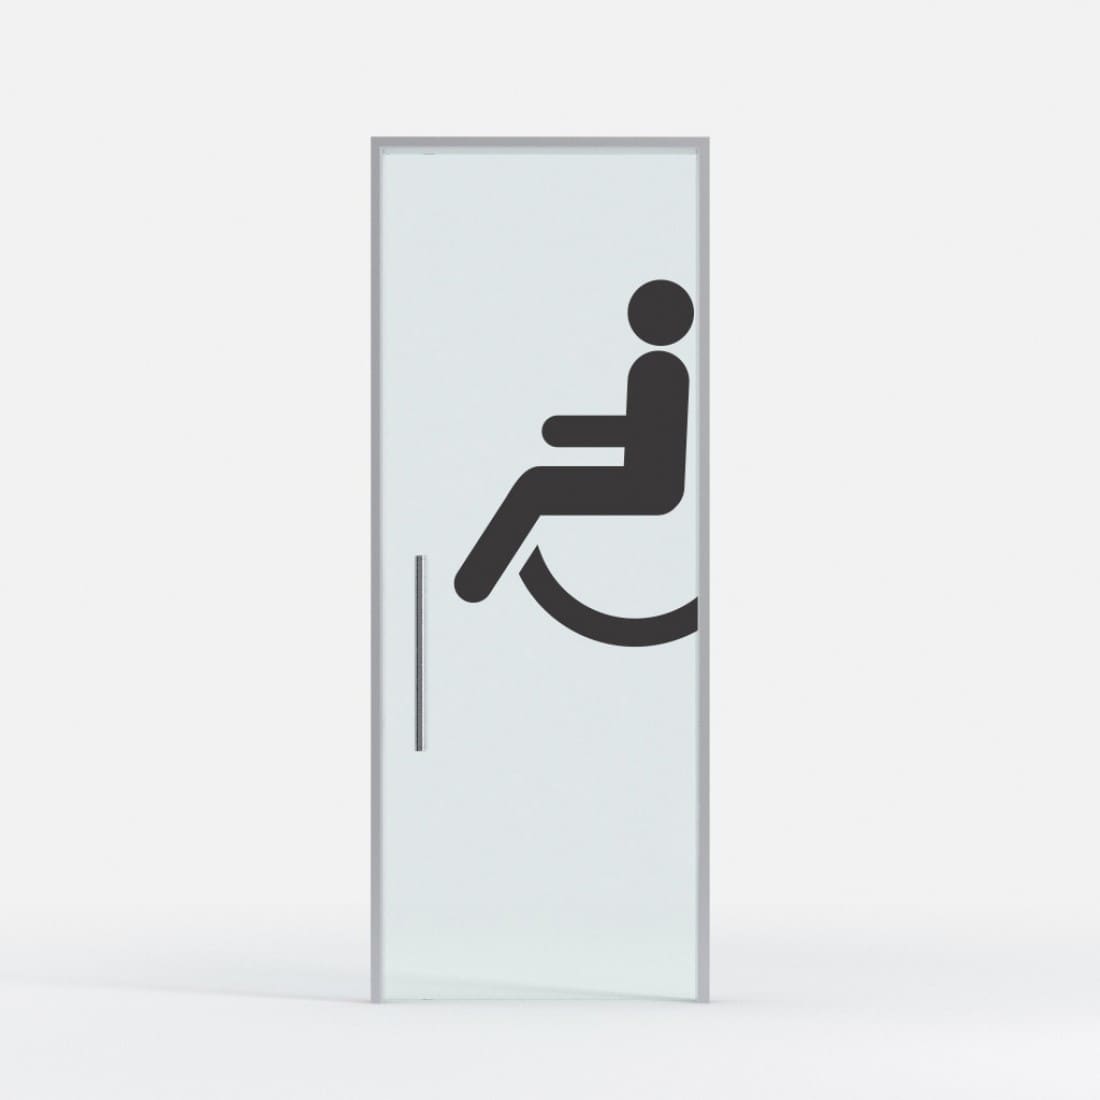 Disabili adesivo wc targhette adesive uso esterno interno Simboli targa porta 12 x 12 cm contrassegno disabili segnaletica facile da utilizzare toilette adesivo per porta per invalidi 